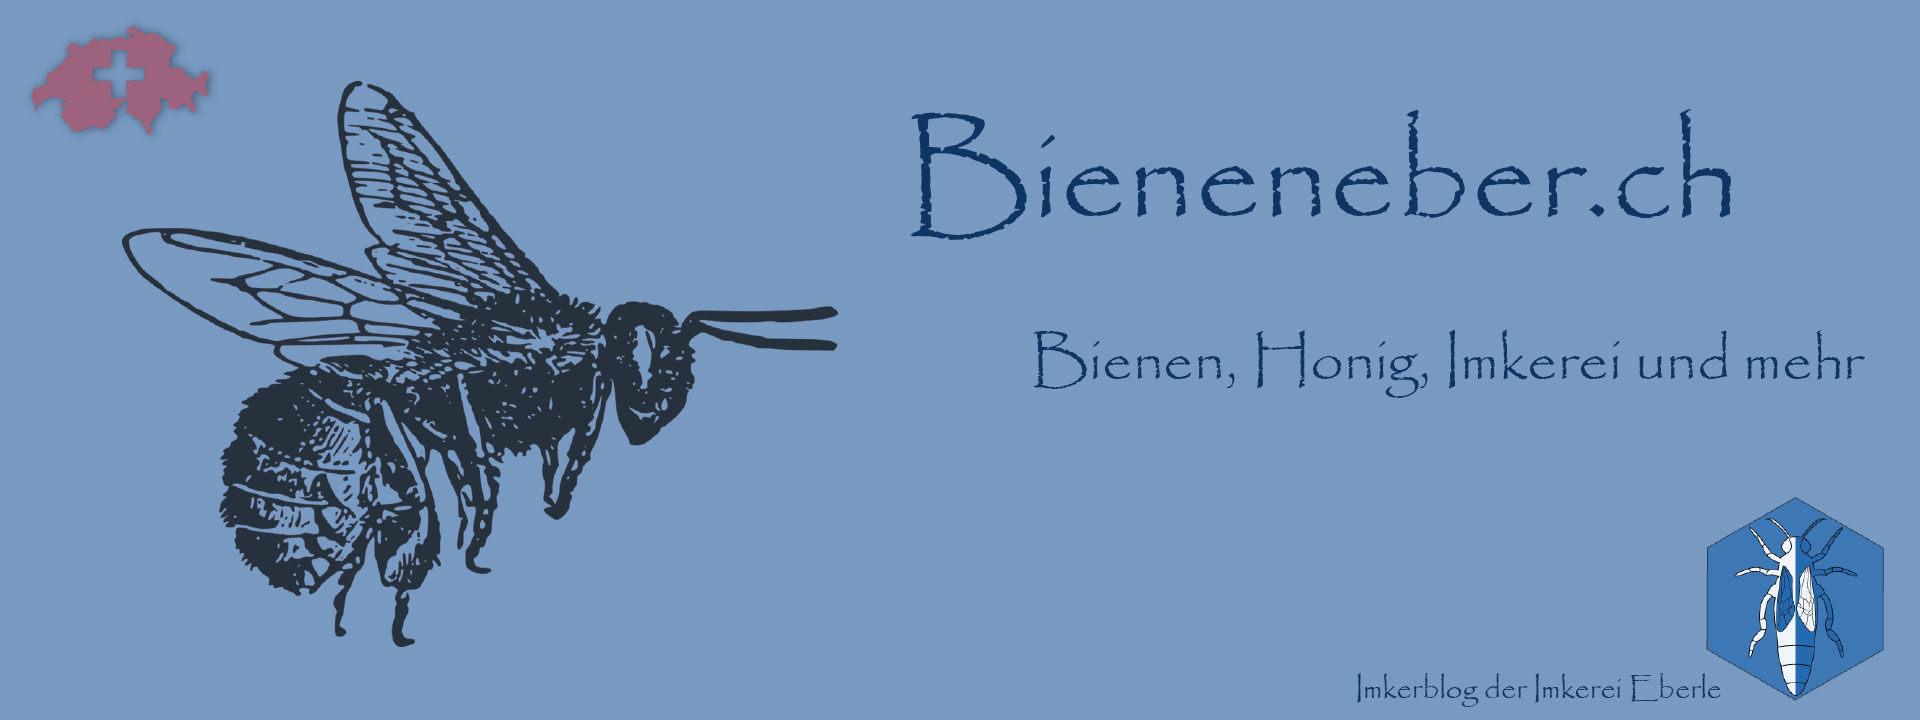 Bieneneber.ch